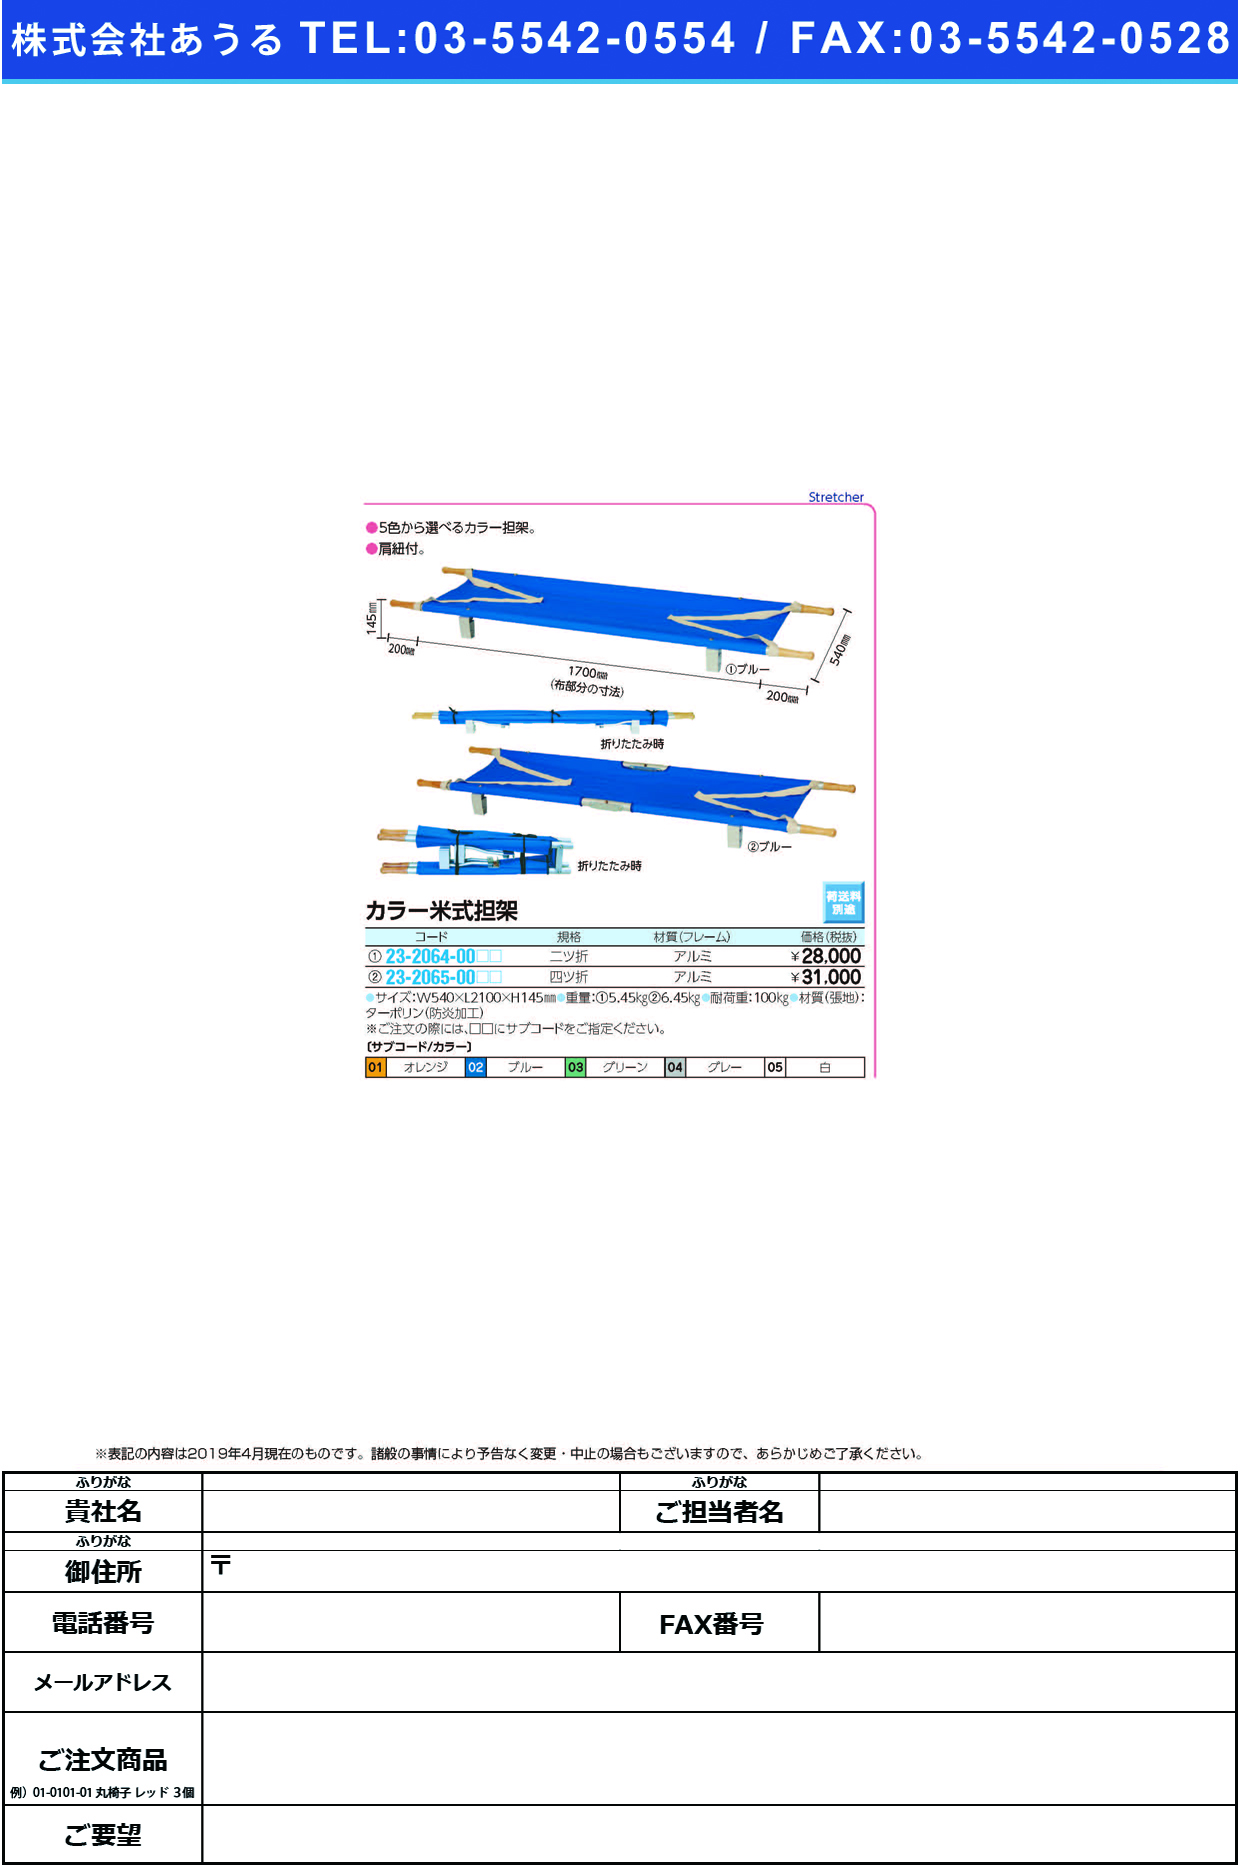 (23-2065-00)カラー米式担架（四ツ折） YS-43-AN-T ｶﾗｰﾍﾞｲｼｷﾀﾝｶ(4ﾂｵﾘ) ブルー【1台単位】【2019年カタログ商品】